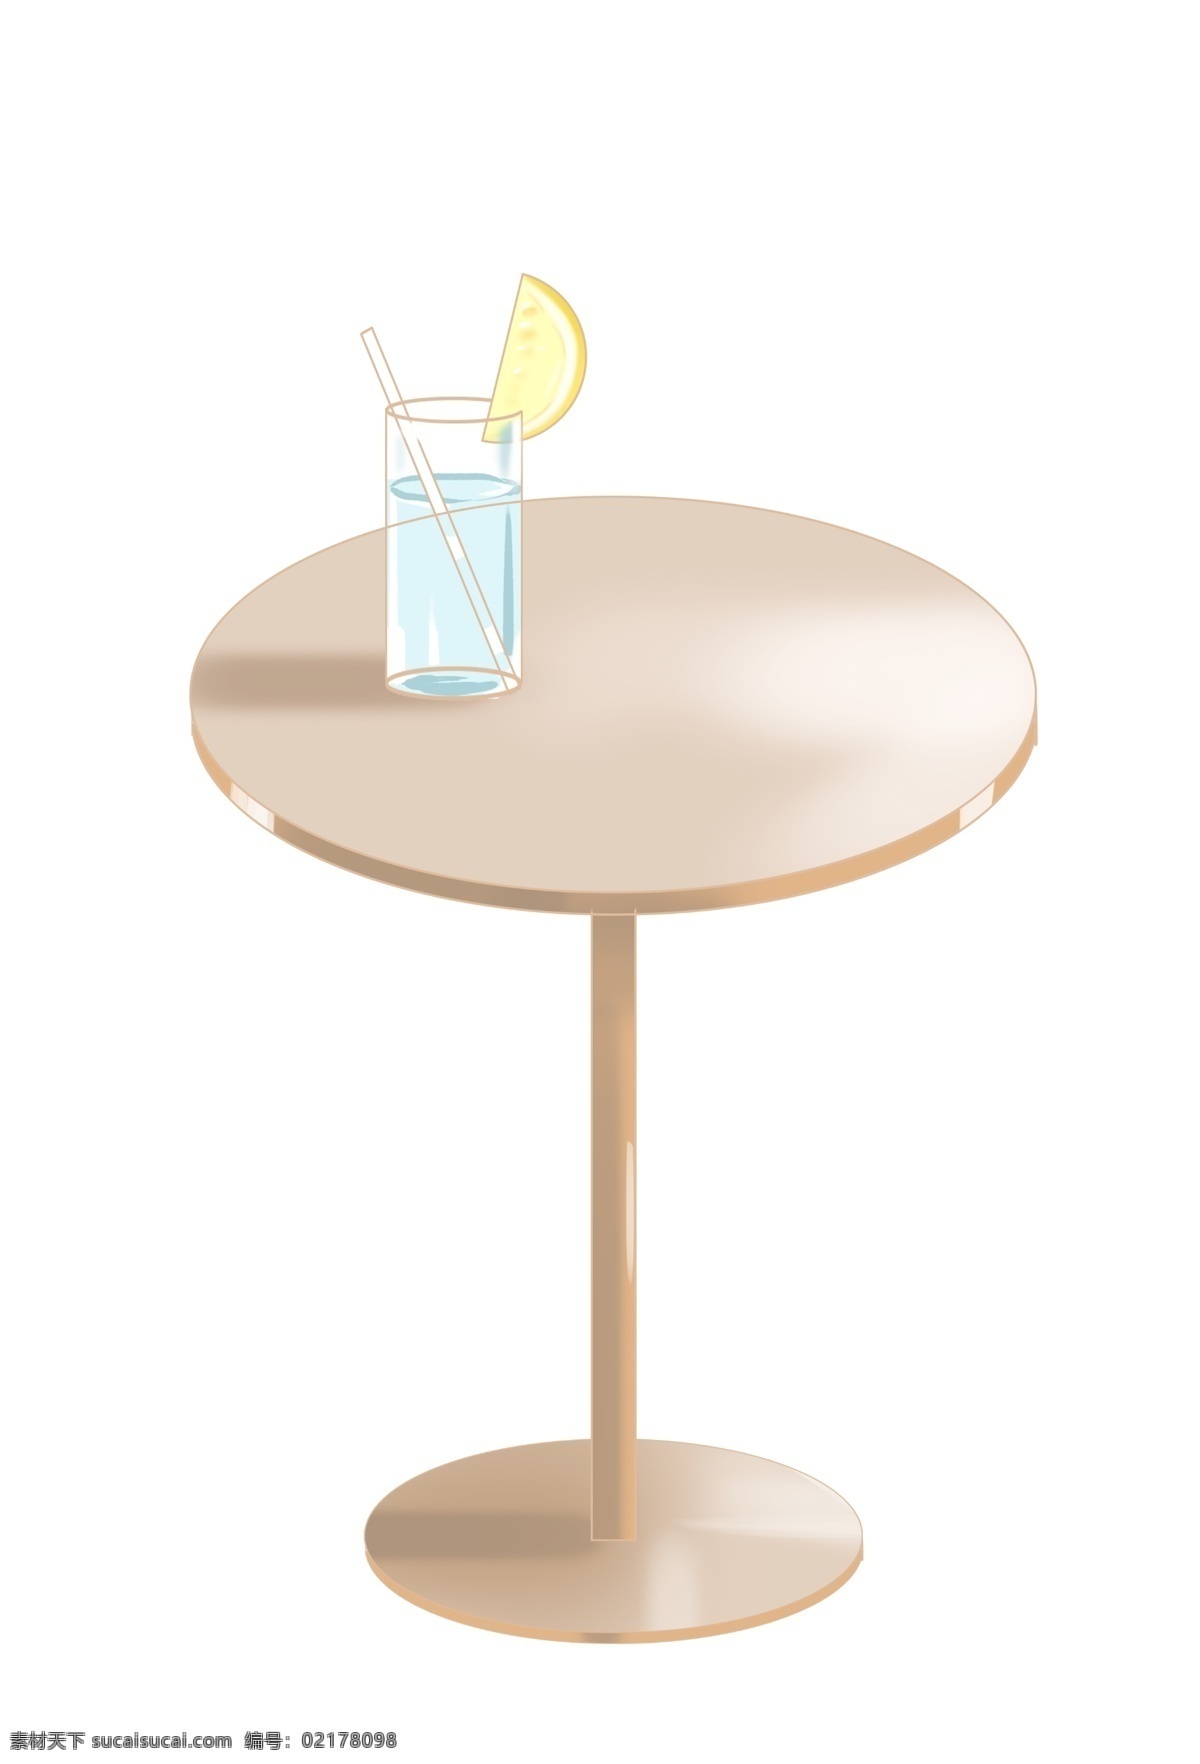 冷饮 桌子 背景 免 扣 夏日冷饮 厚涂风格 柠檬冰水 金属桌子 可自行组合 背景免扣 写实风格